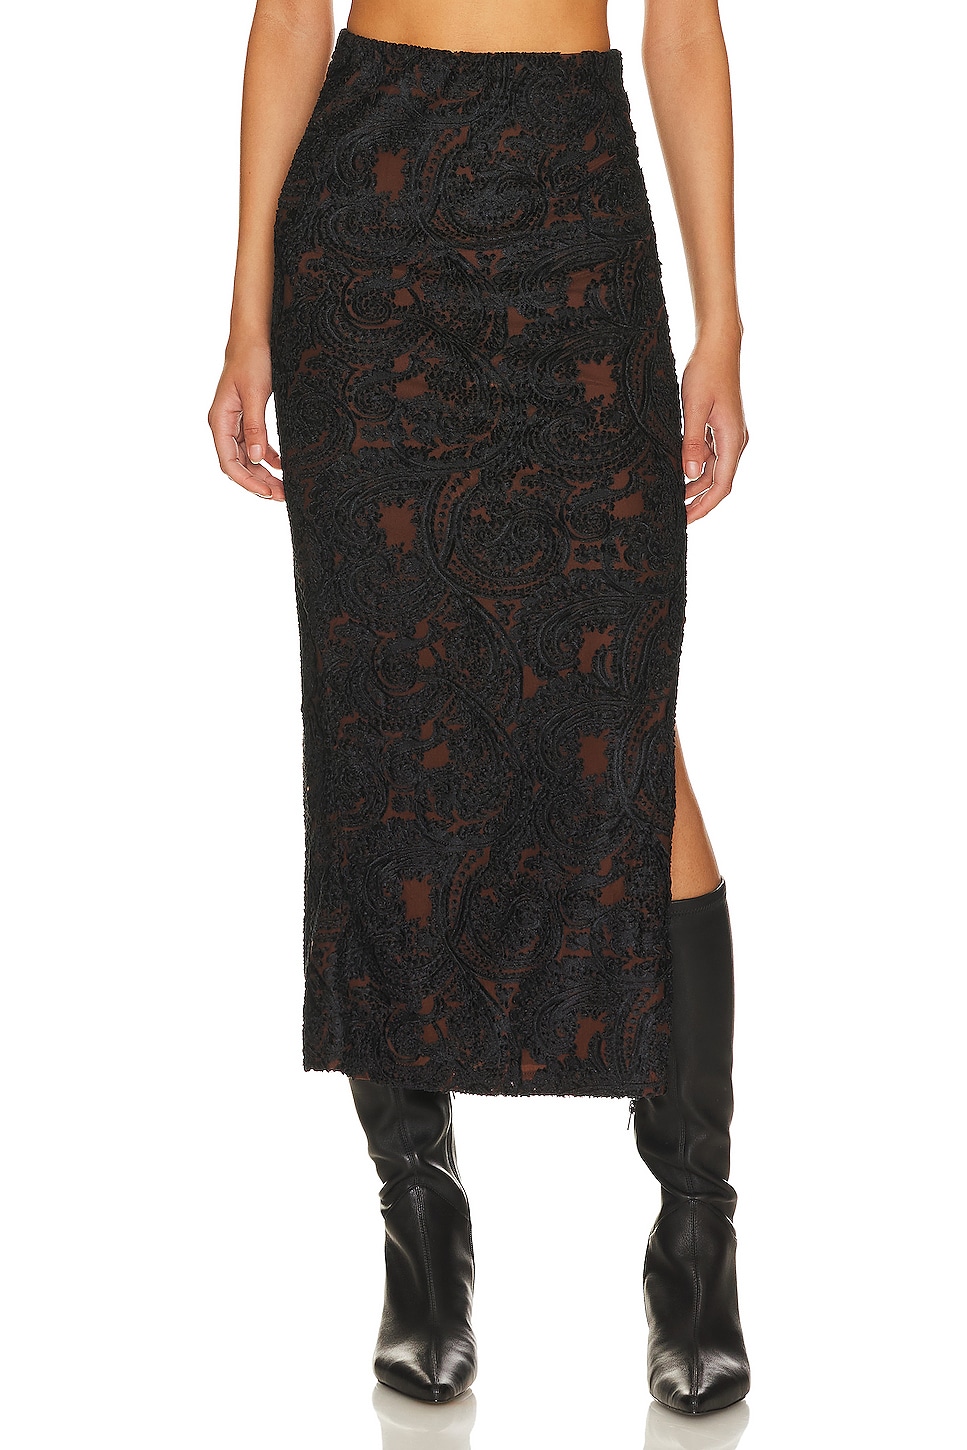 Philipp Plein cut-out velvet midi skirt - Black